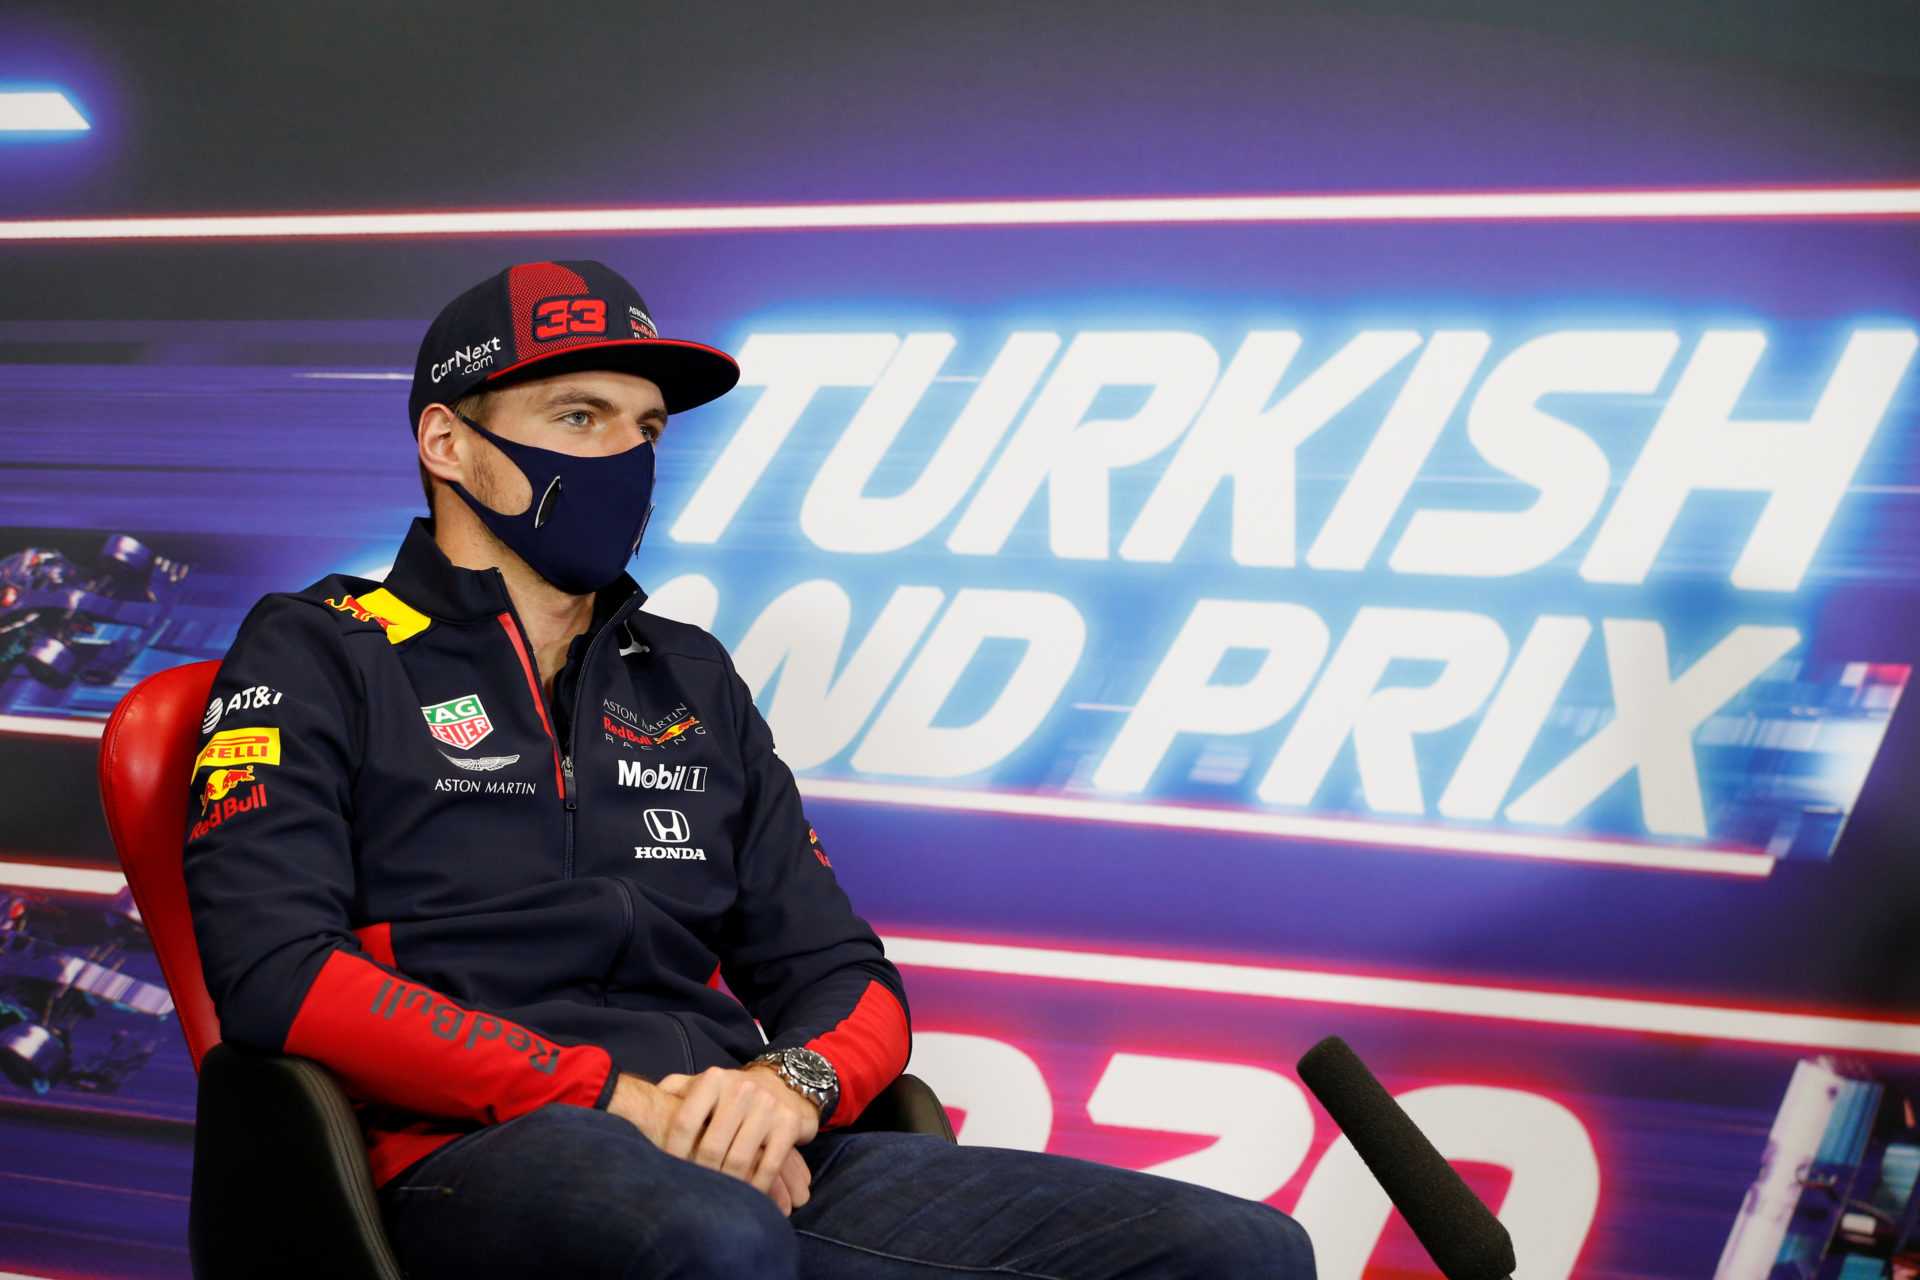 RÉVÉLÉ: Pourquoi le pneu de Max Verstappen a explosé à Imola